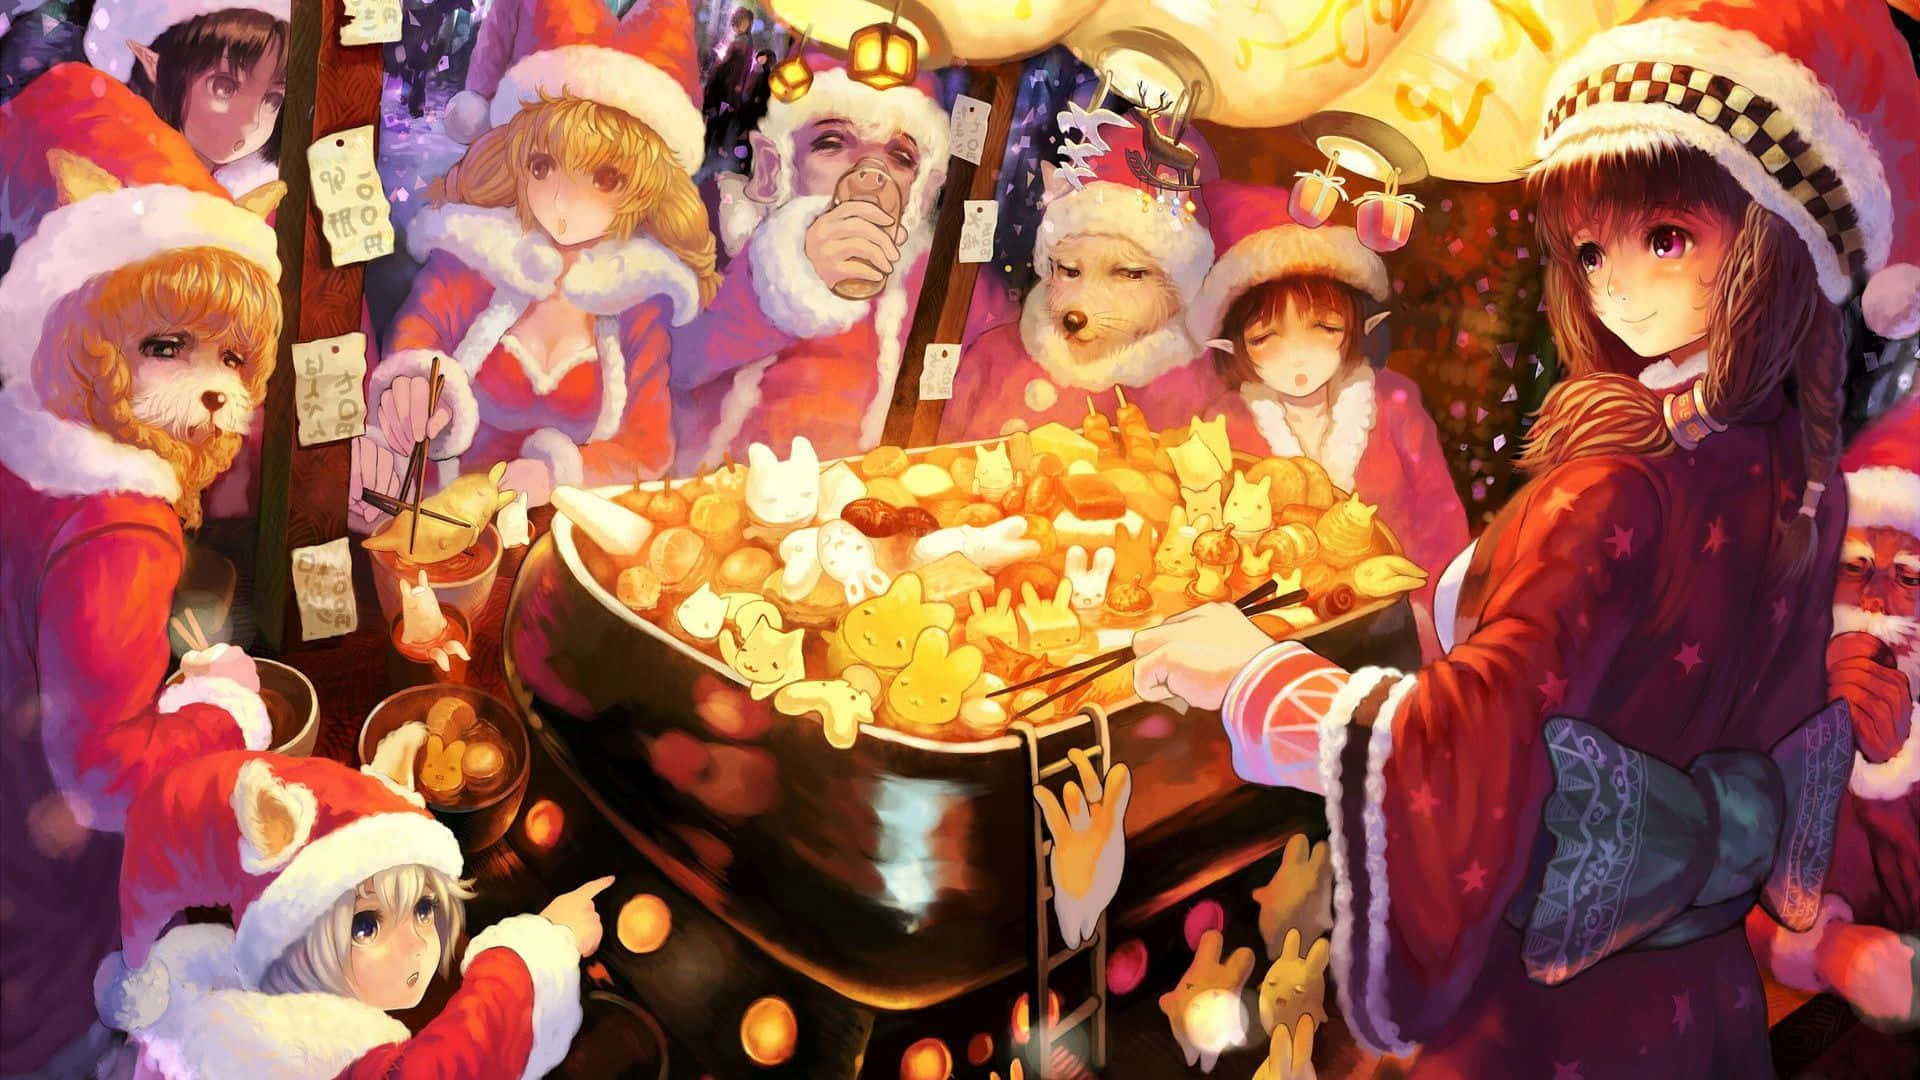 Enjoy the festive season with a magical Anime Christmas!